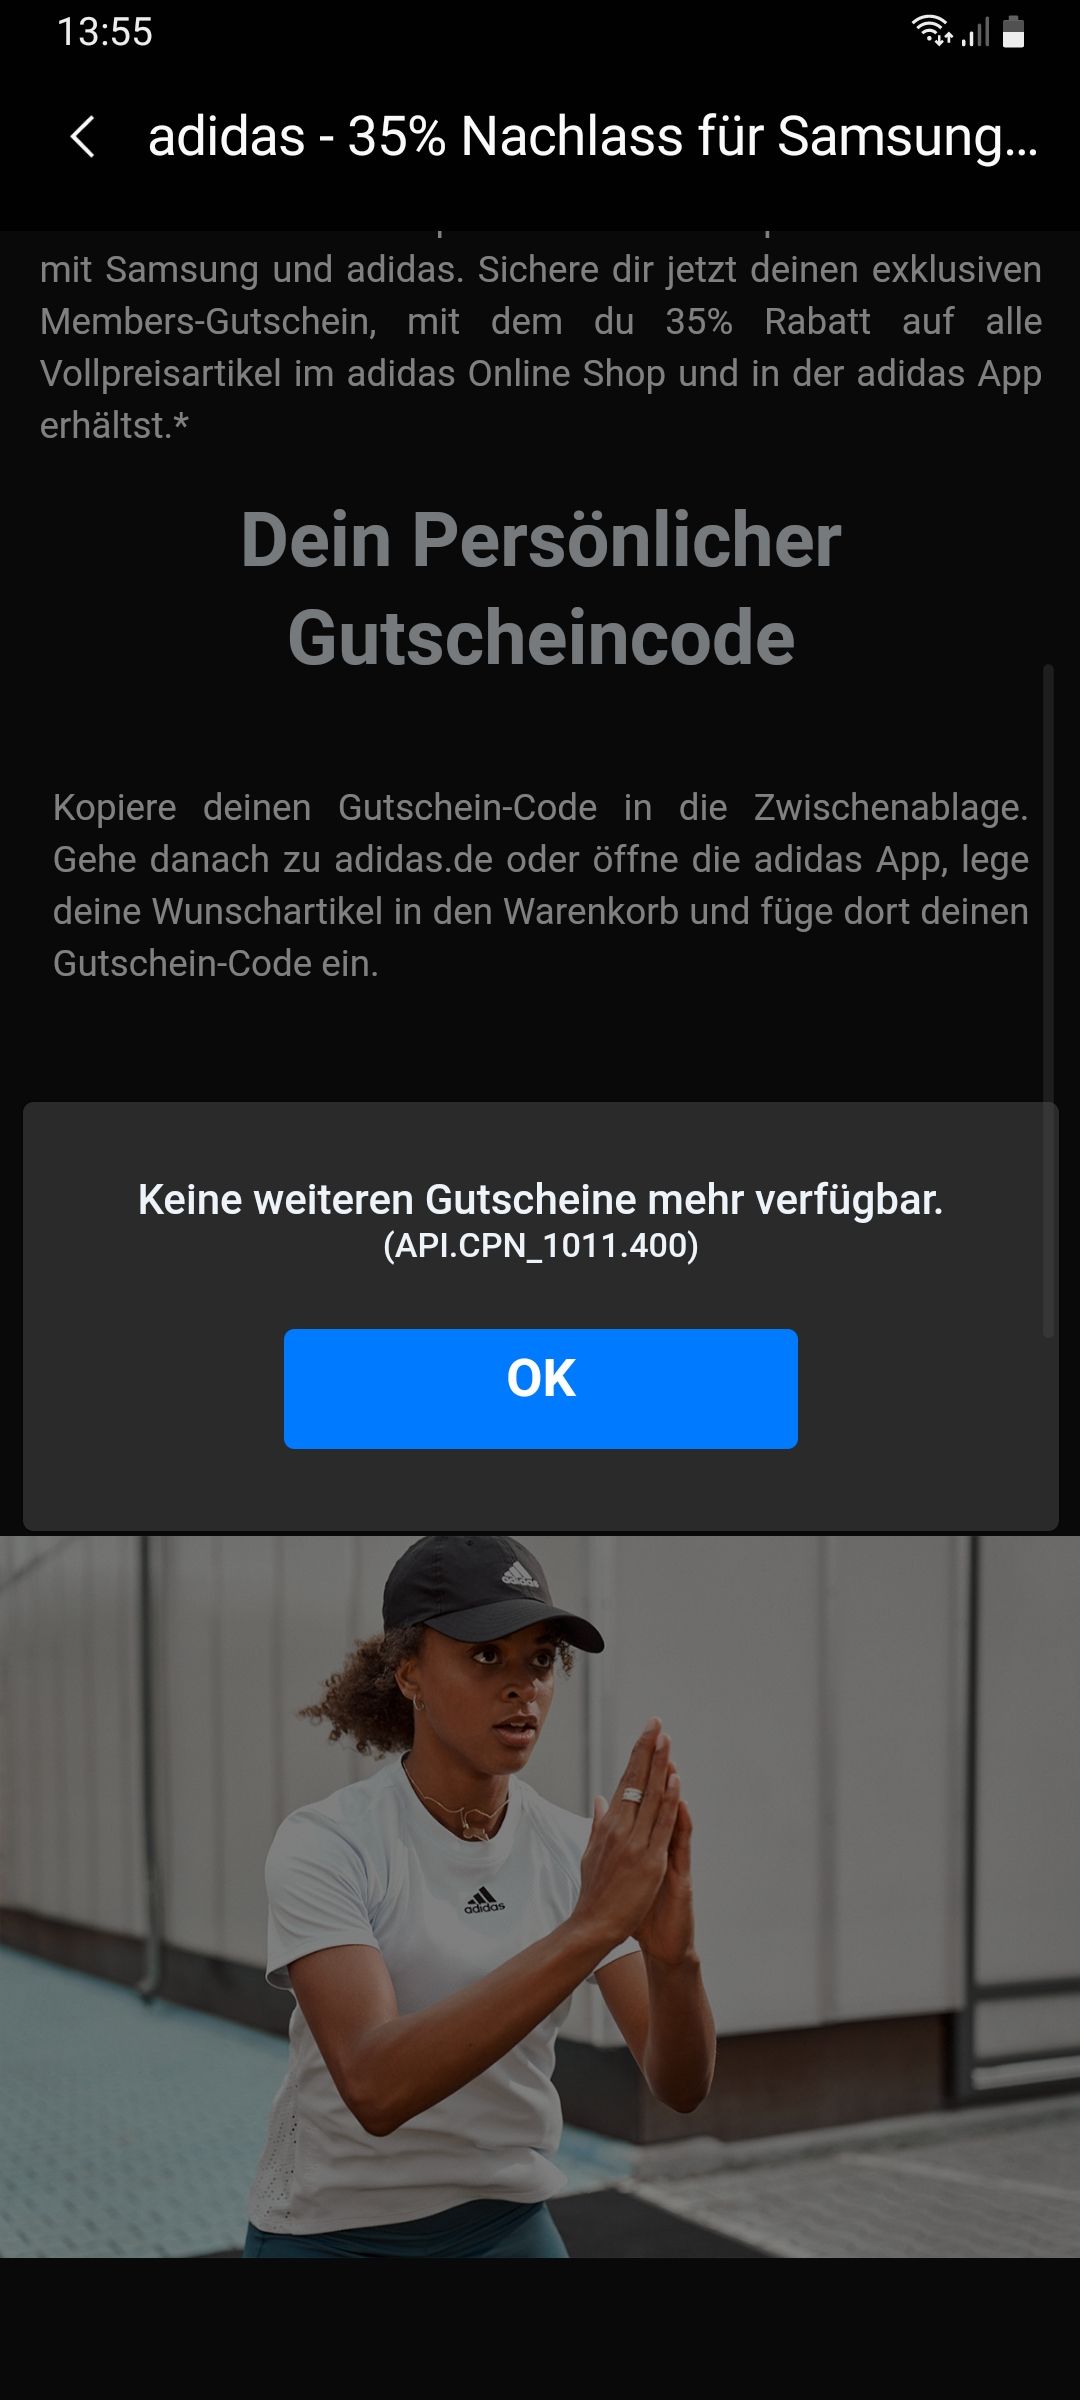 Adidas gutdchein - Samsung Community